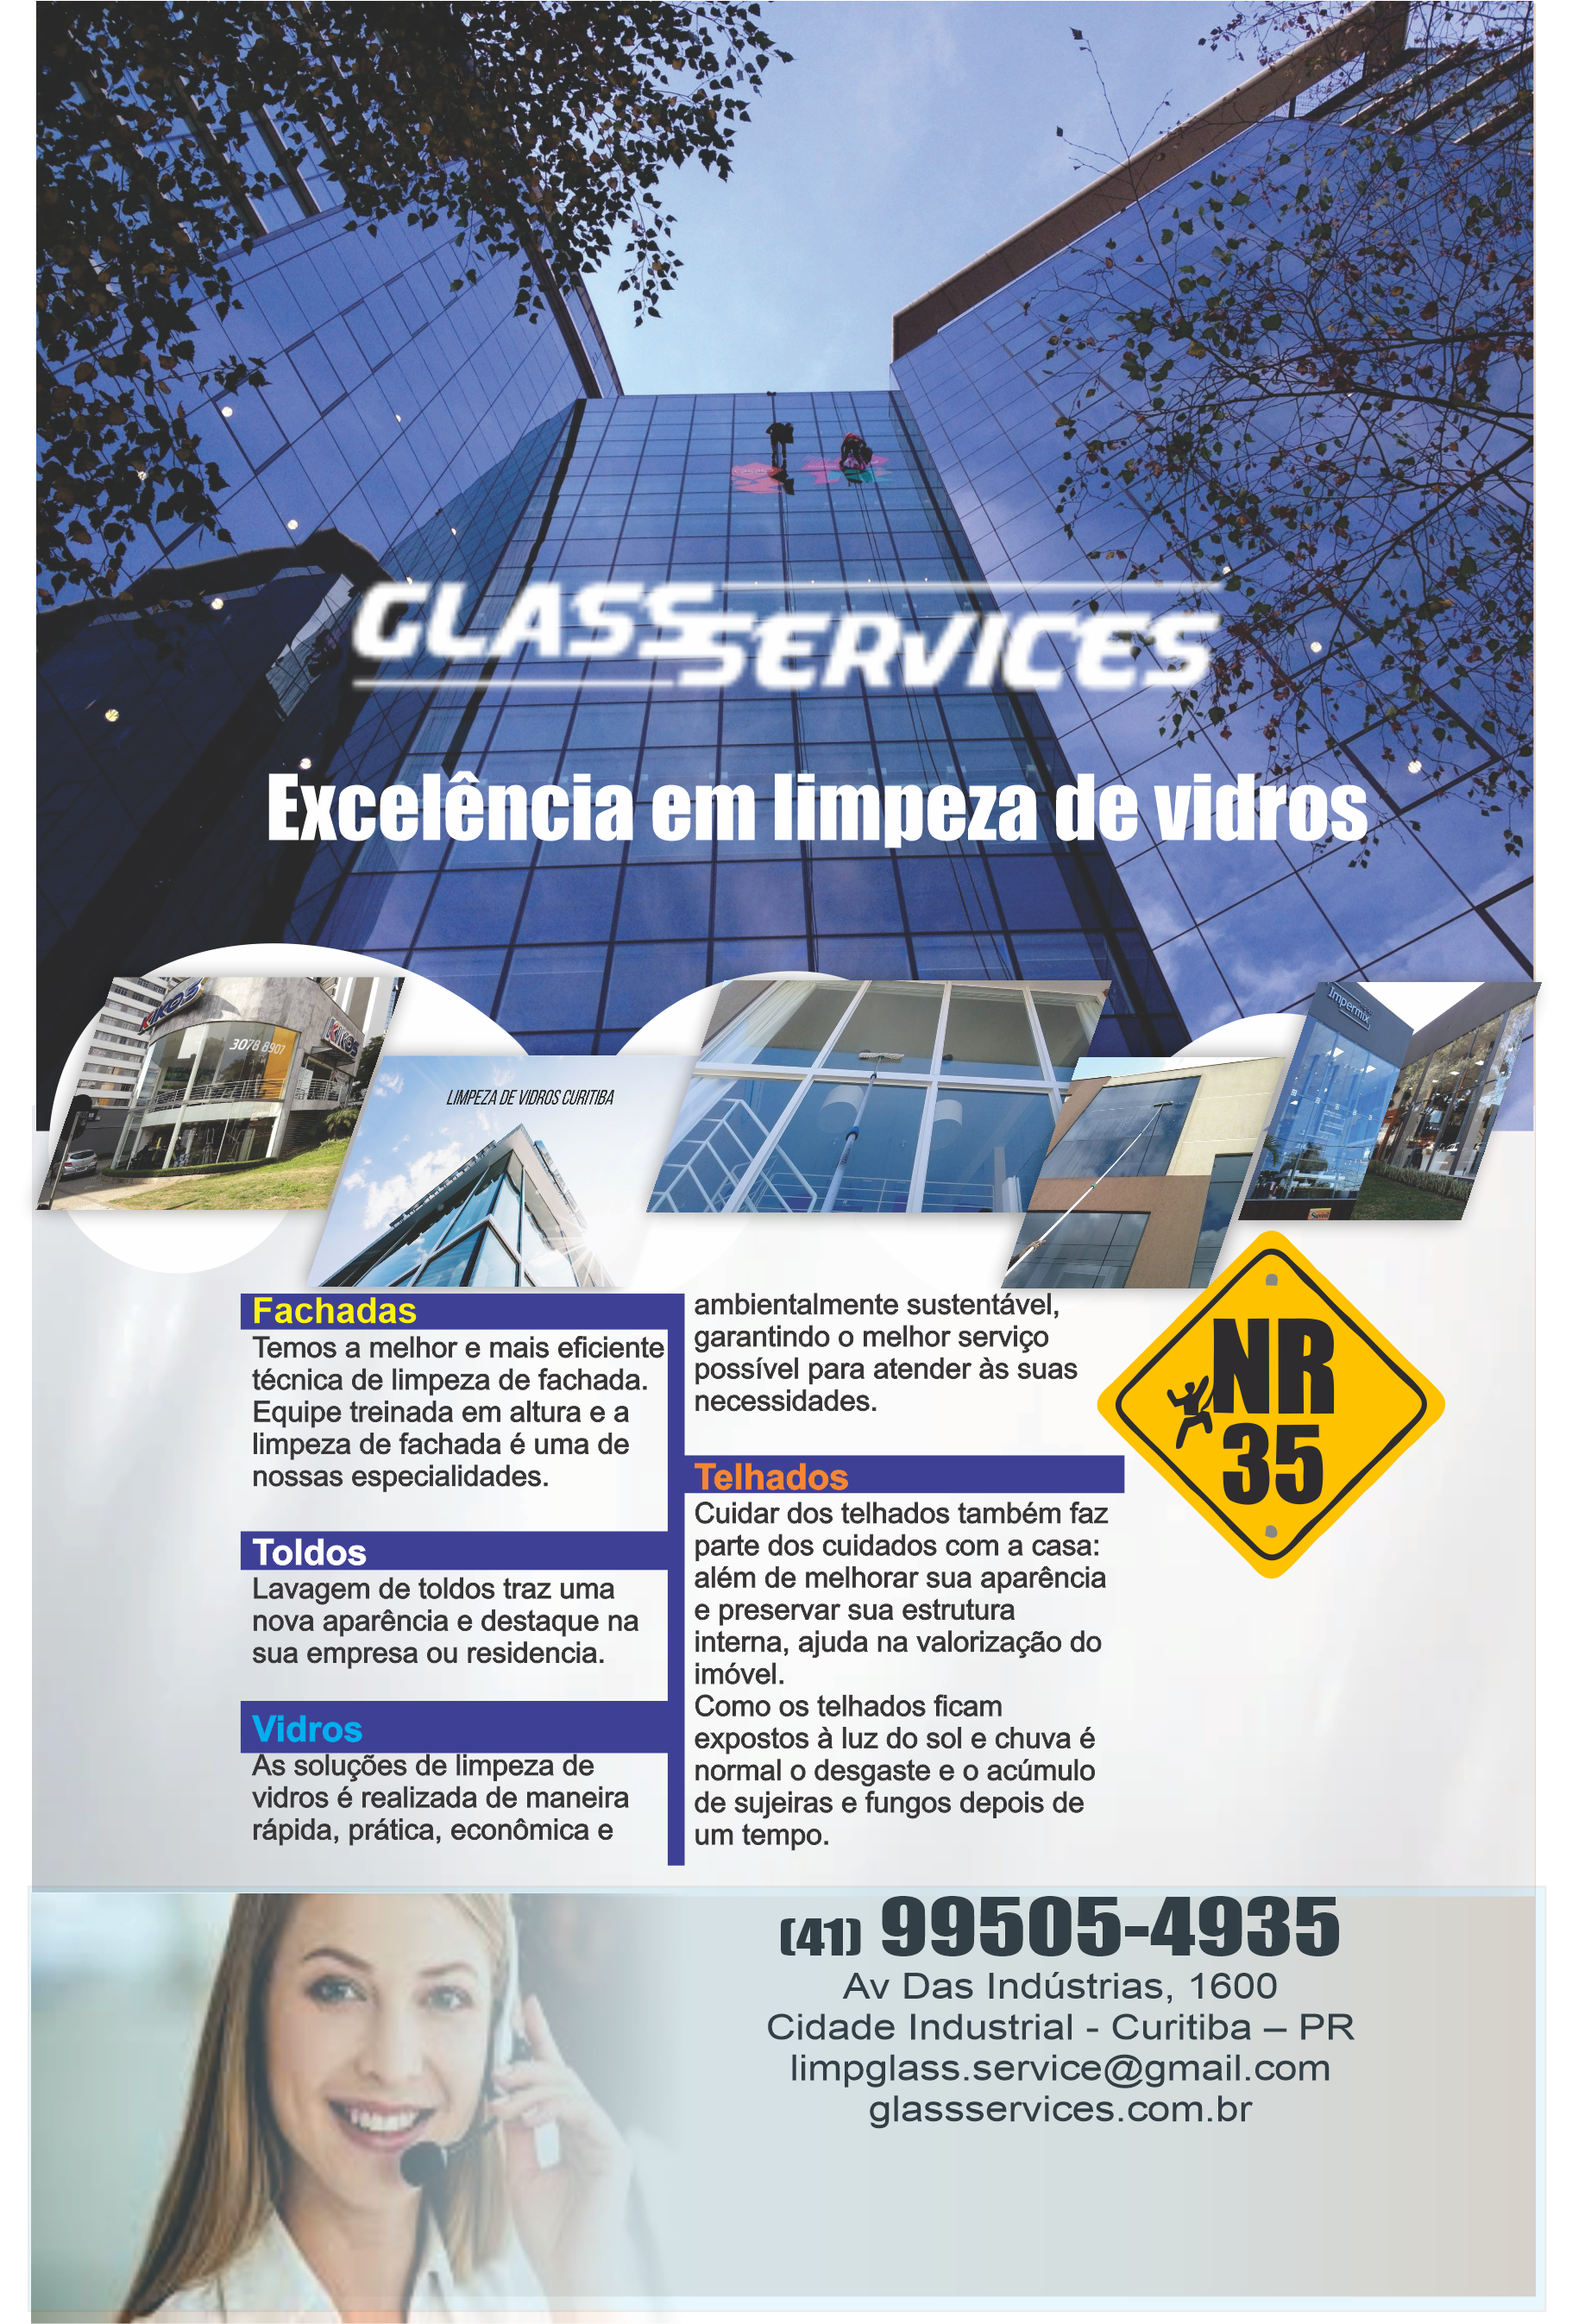 Glass Services Excelência em Limpeza de Vidros      AVENIDA DAS INDÚSTRIAS, 1600, CURITIBA - PR  Fones: (41) 9950-5493 /